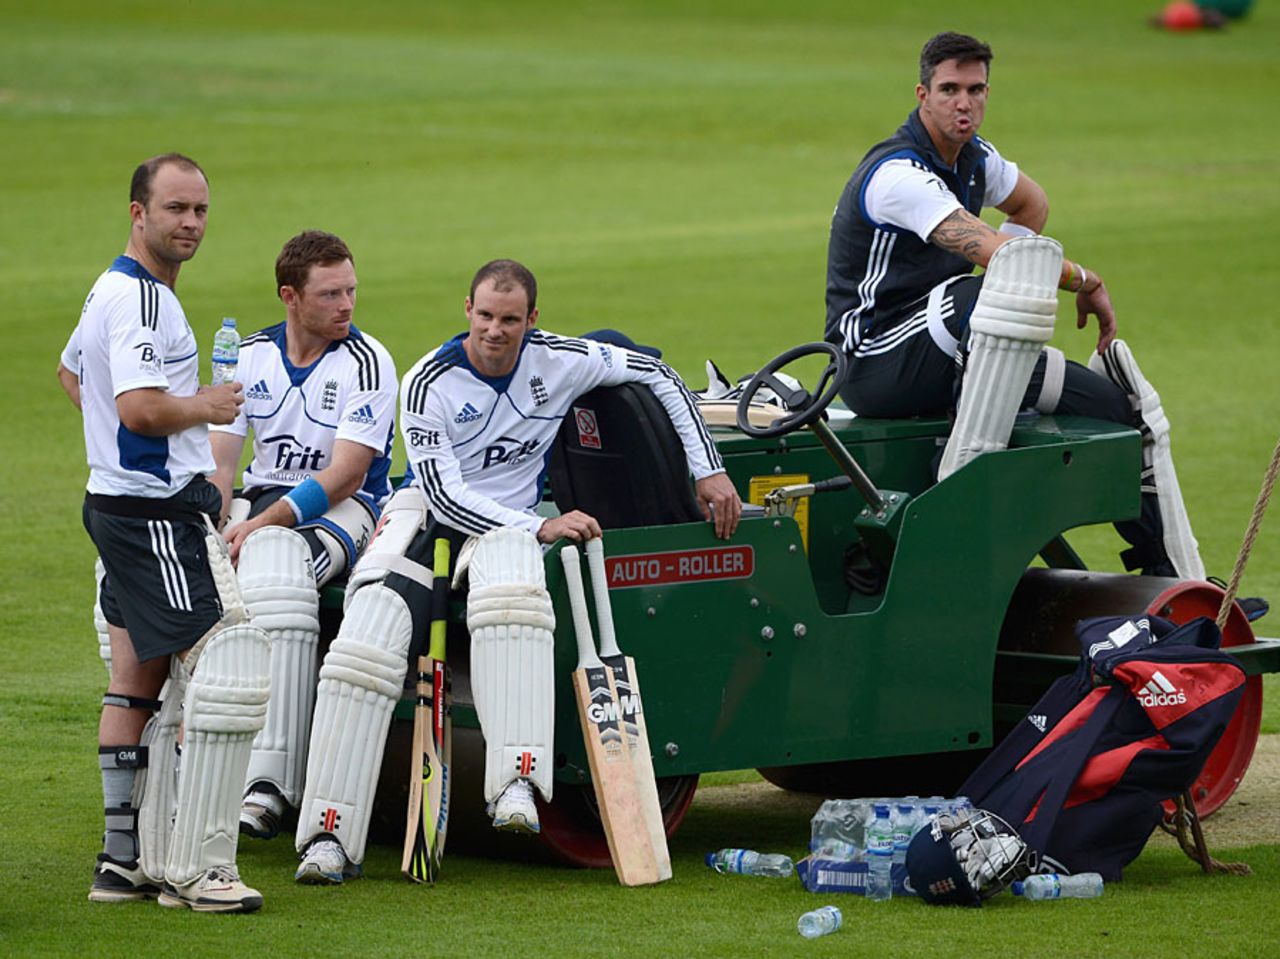 England's batsmen wait for a net, The Oval, July 17, 2012